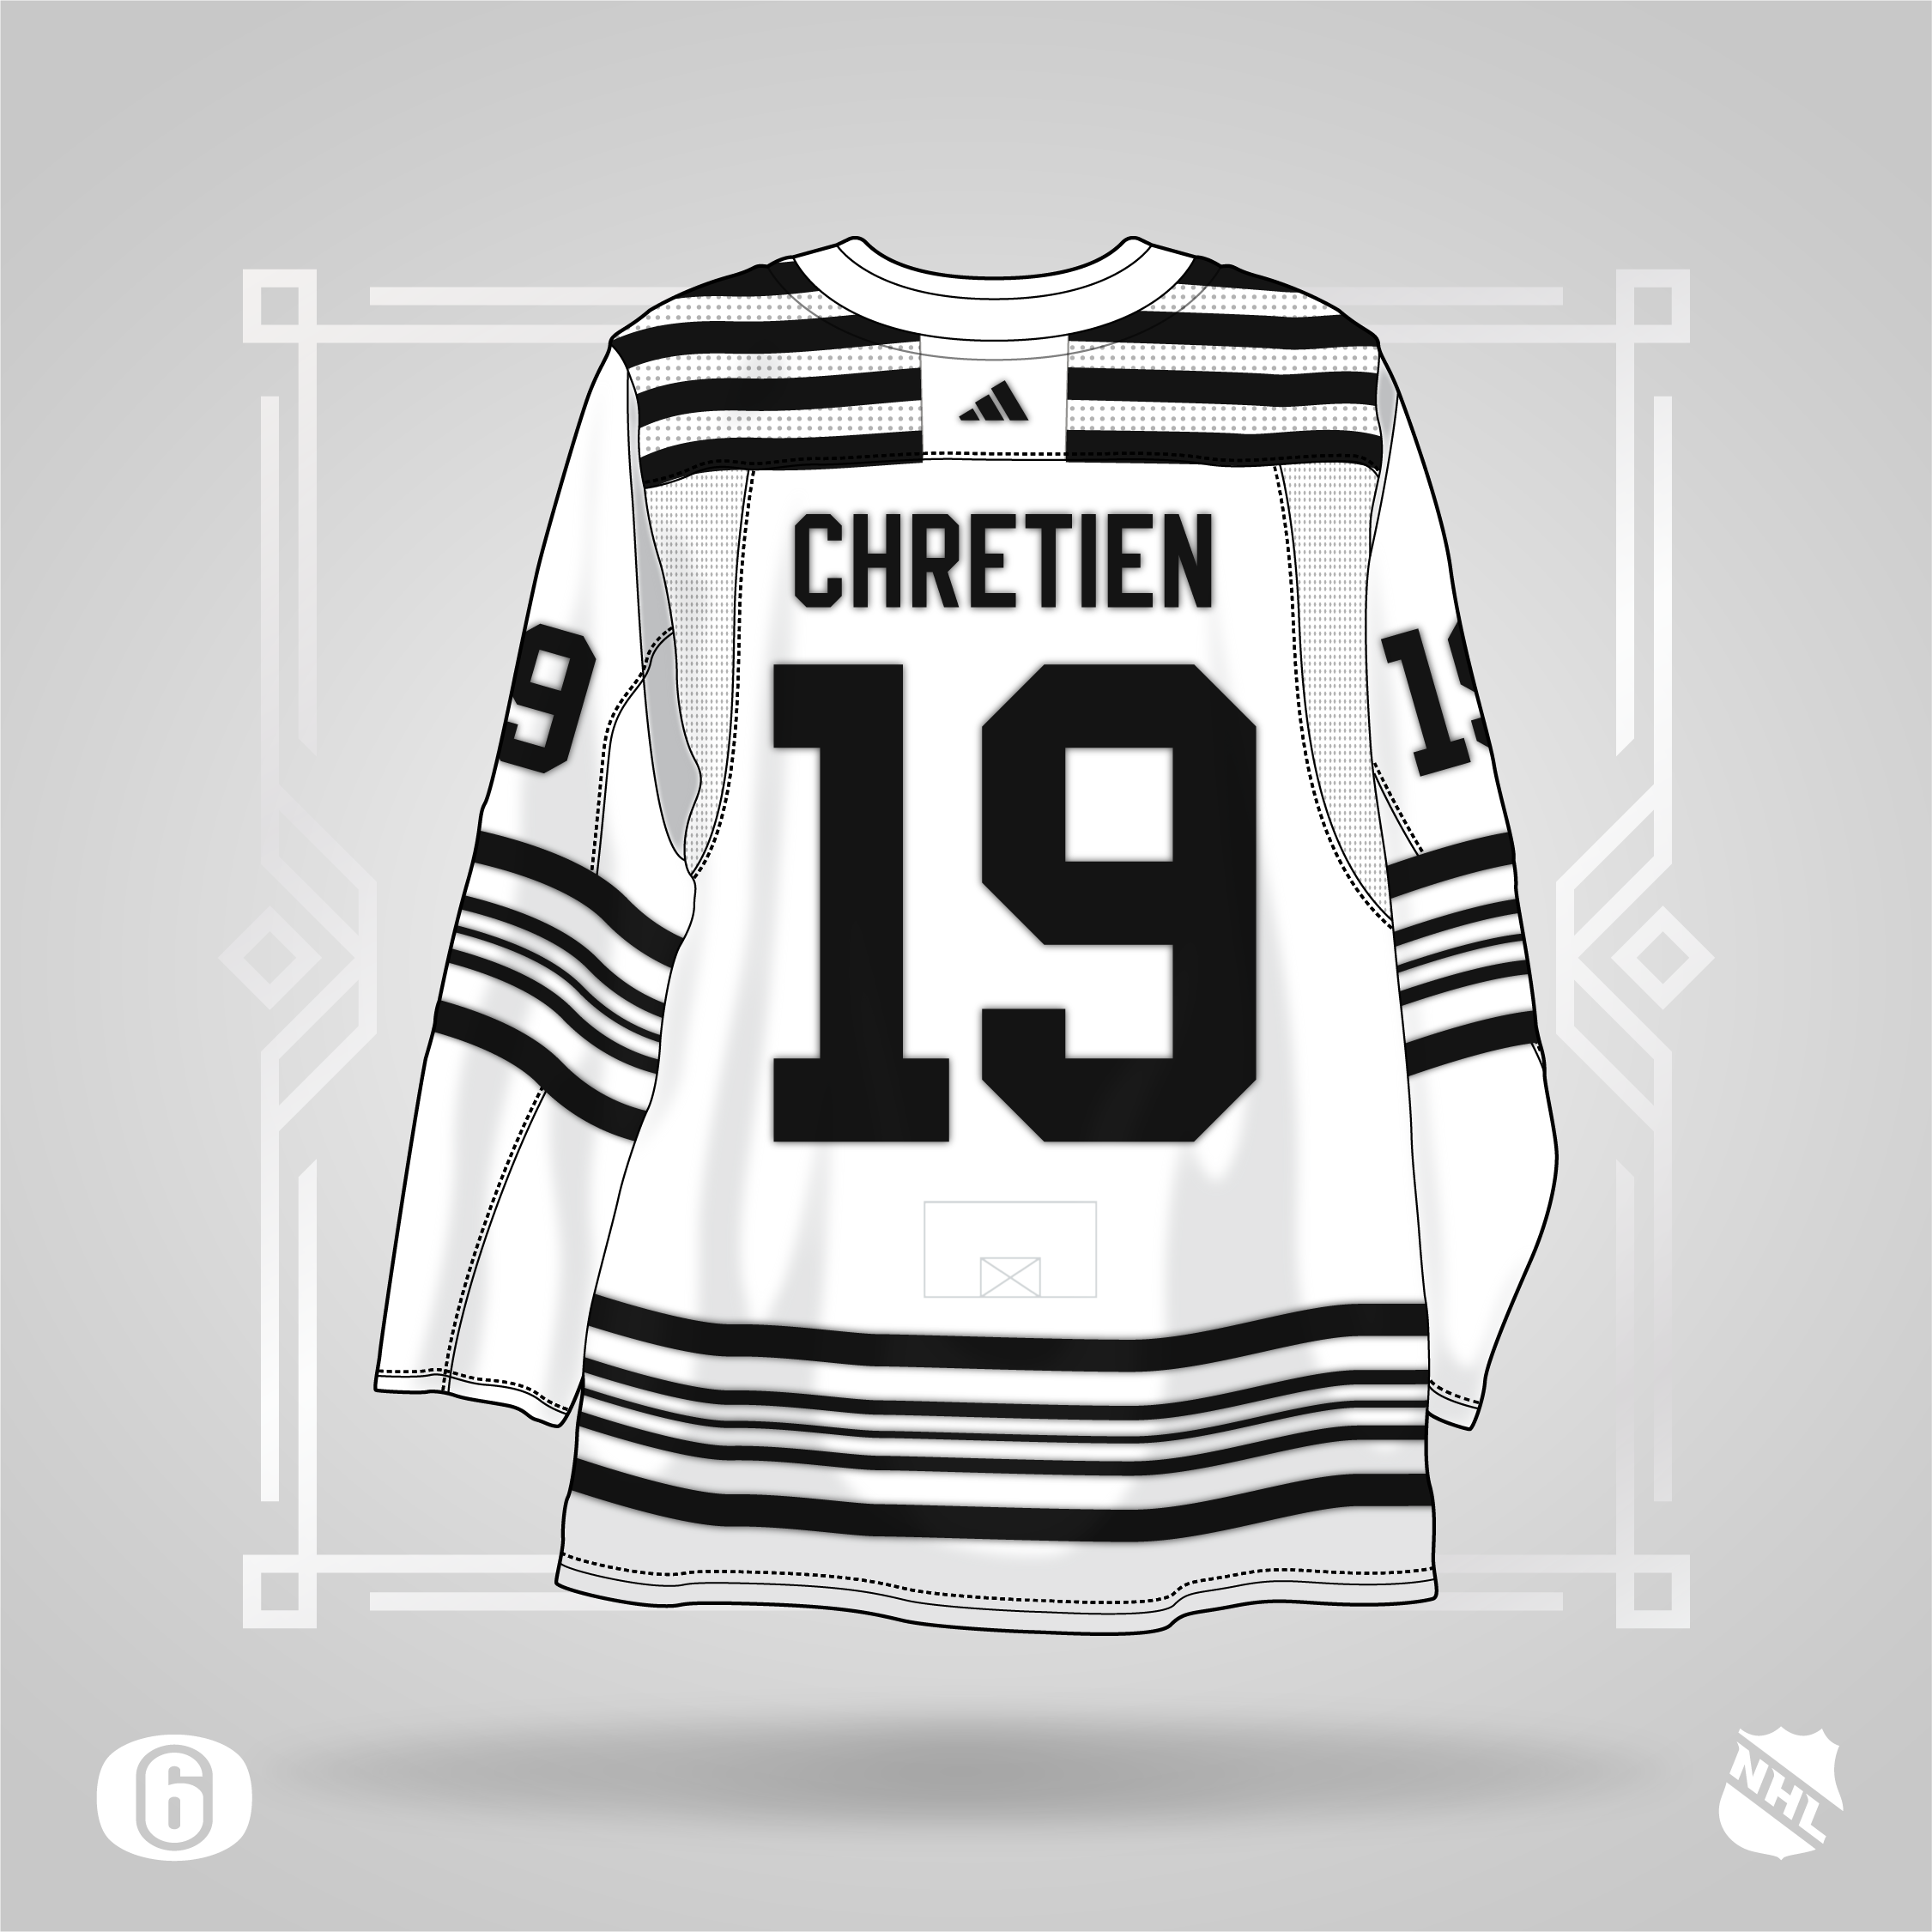 Original 6 jersey concepts : r/hockey